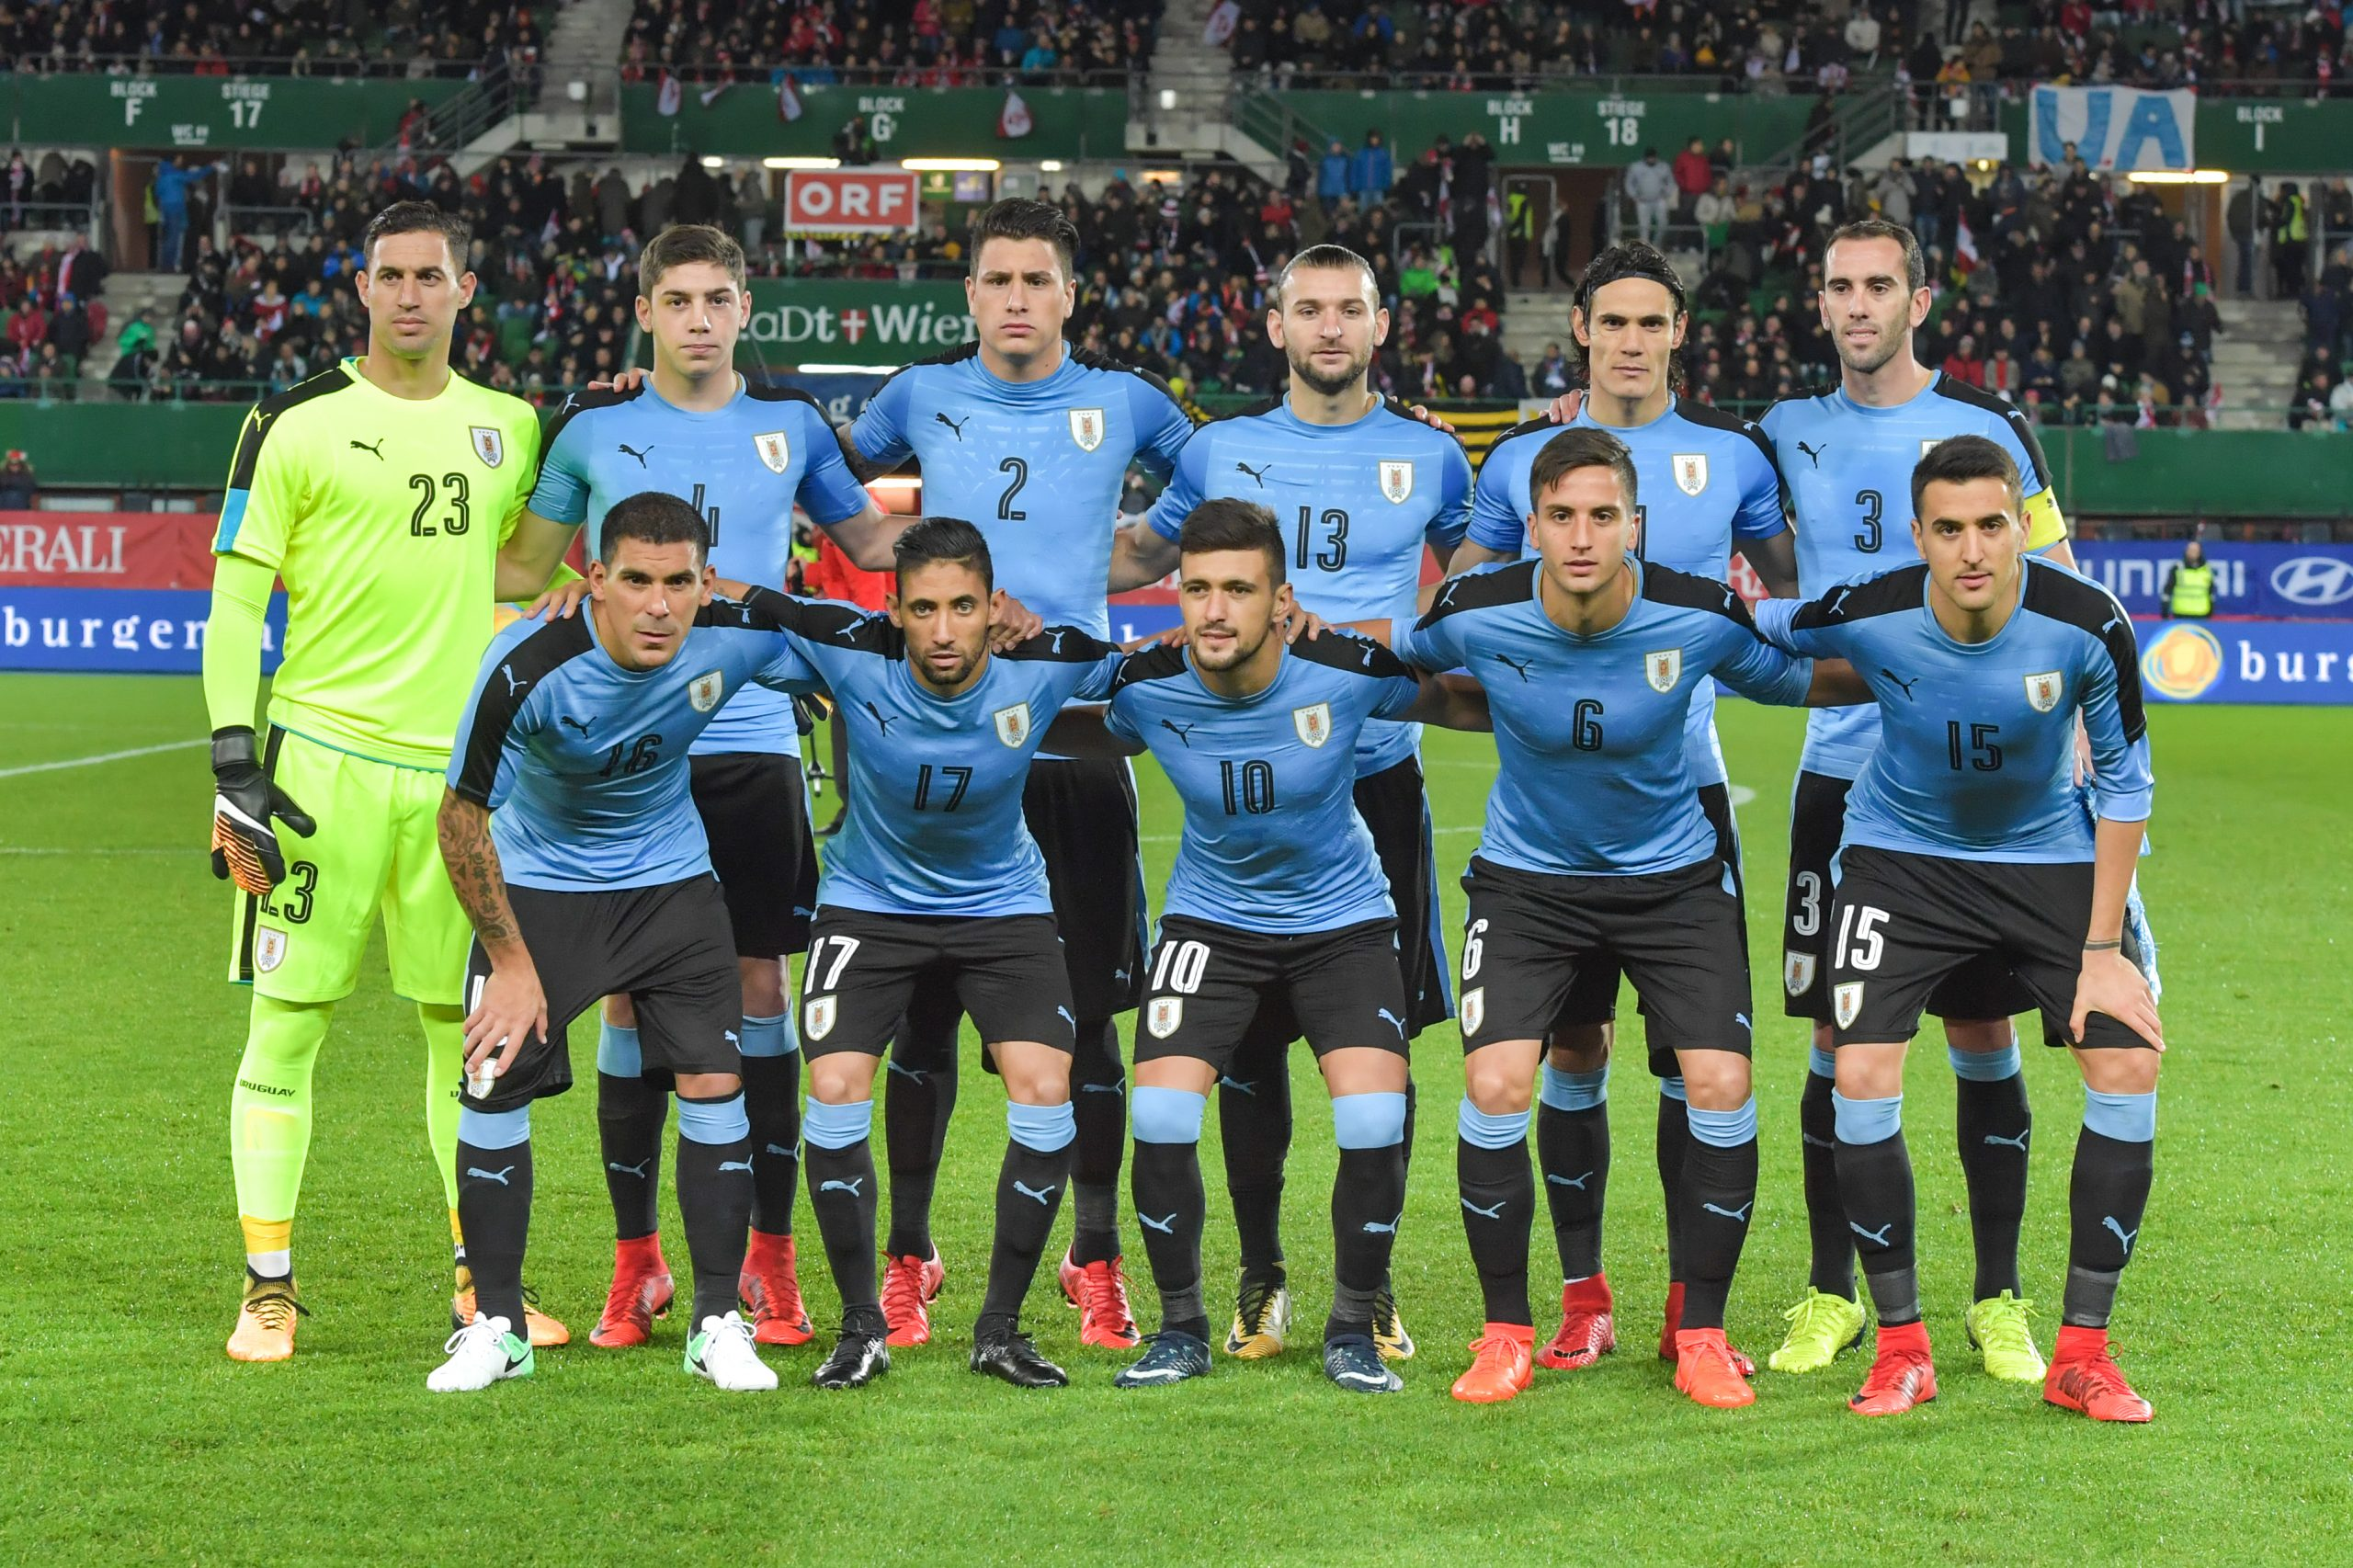 乌拉圭国家男子足球队,成为本届世界杯小组赛出局最冤枉的球队